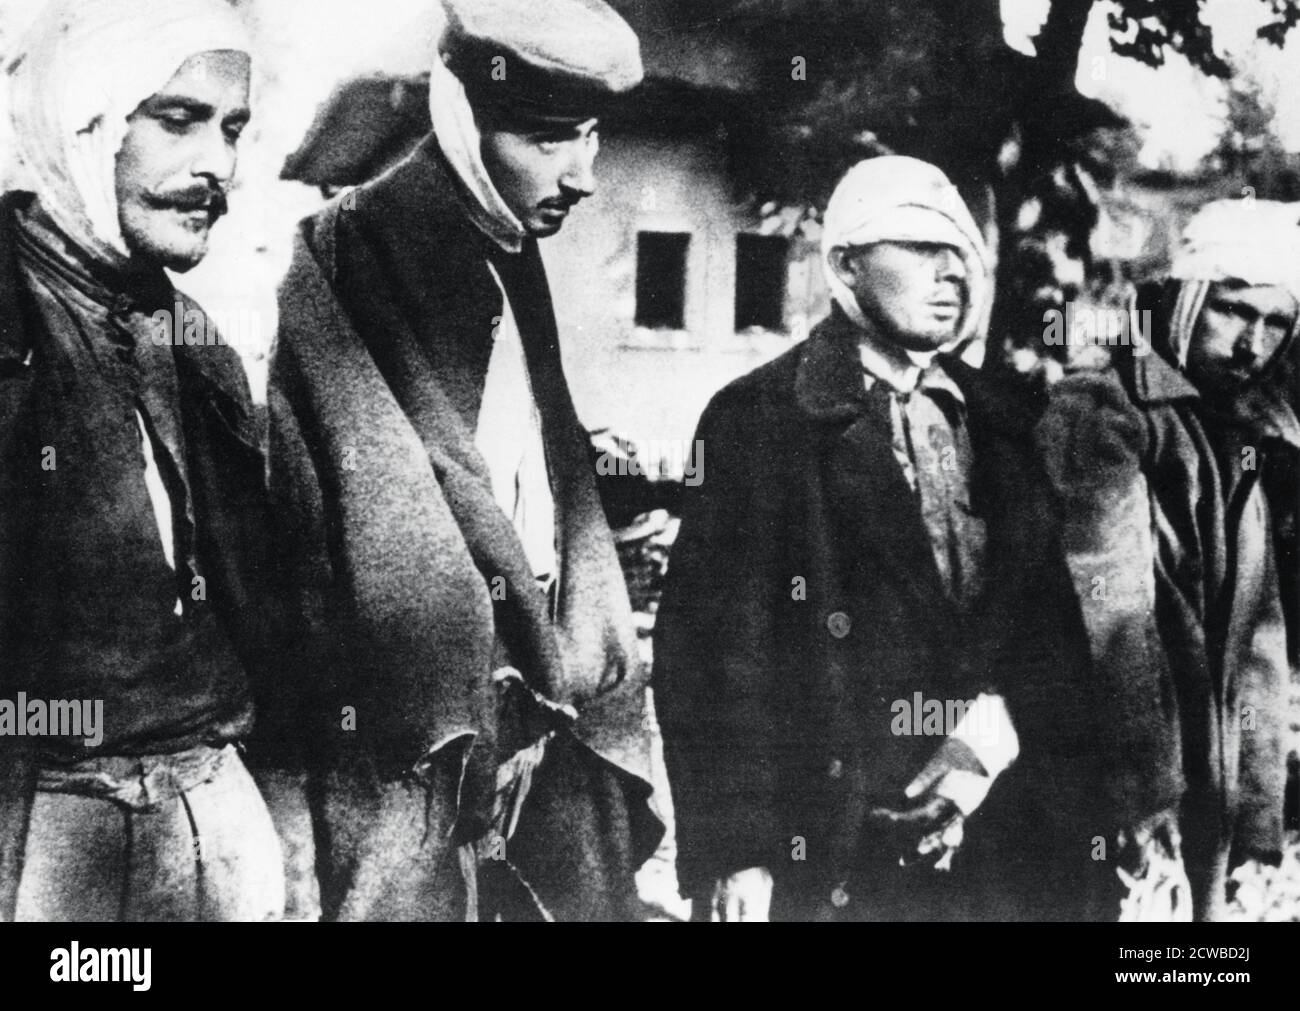 Befreite Gefangene aus dem Konzentrationslager Salaspils, Lettland, befreit von der Roten Armee im Jahr 1944. Schätzungsweise 53,000 Menschen starben in dem von lettischen Kollaborateuren geführten Lager. Der Fotograf ist unbekannt. Stockfoto